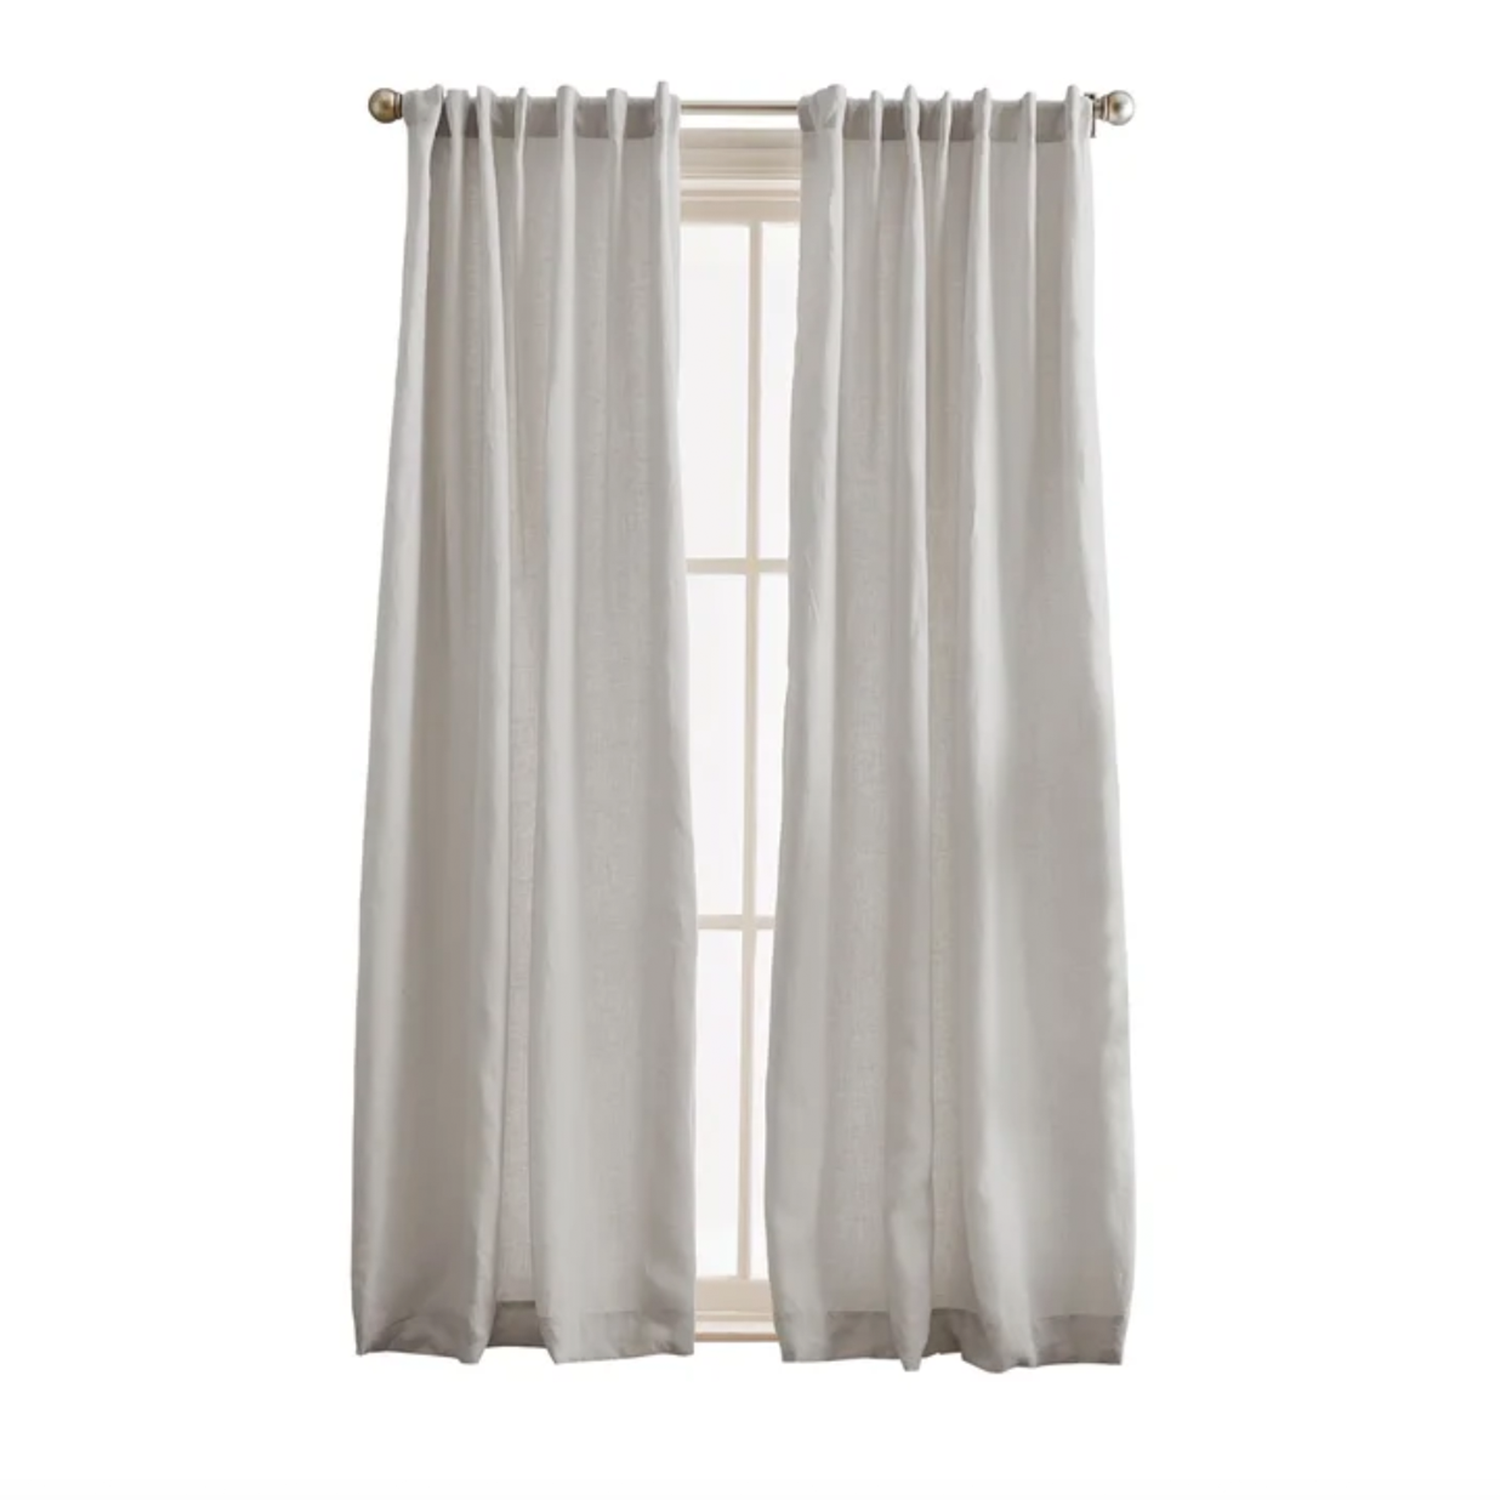 Linen Semi-Sheer Curtain Pair (Set of 2)